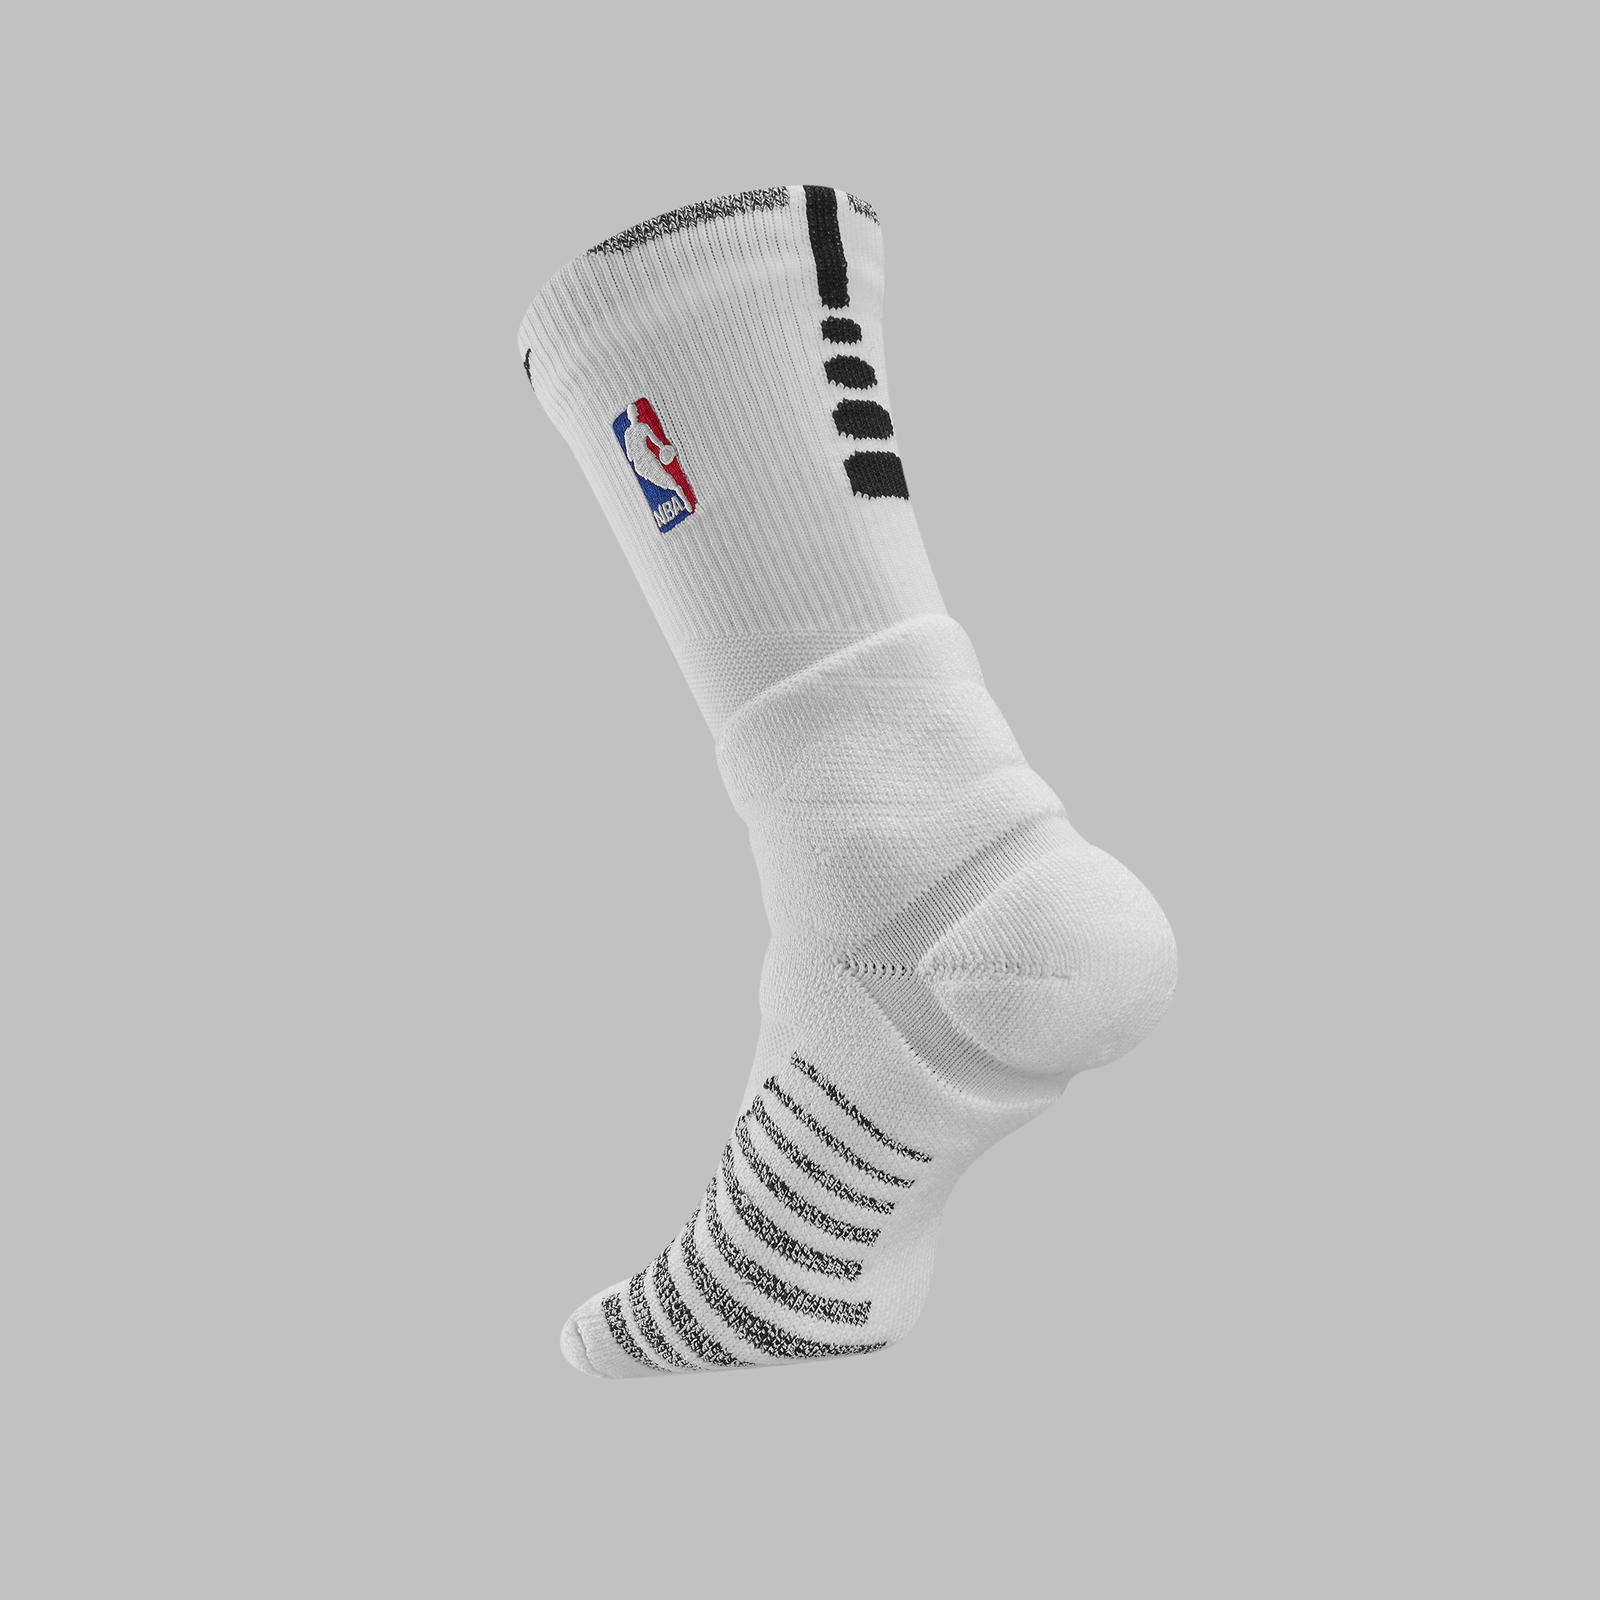 Nike NBA Elite Power Grip Socks - Jordan - Hornets - White and Black